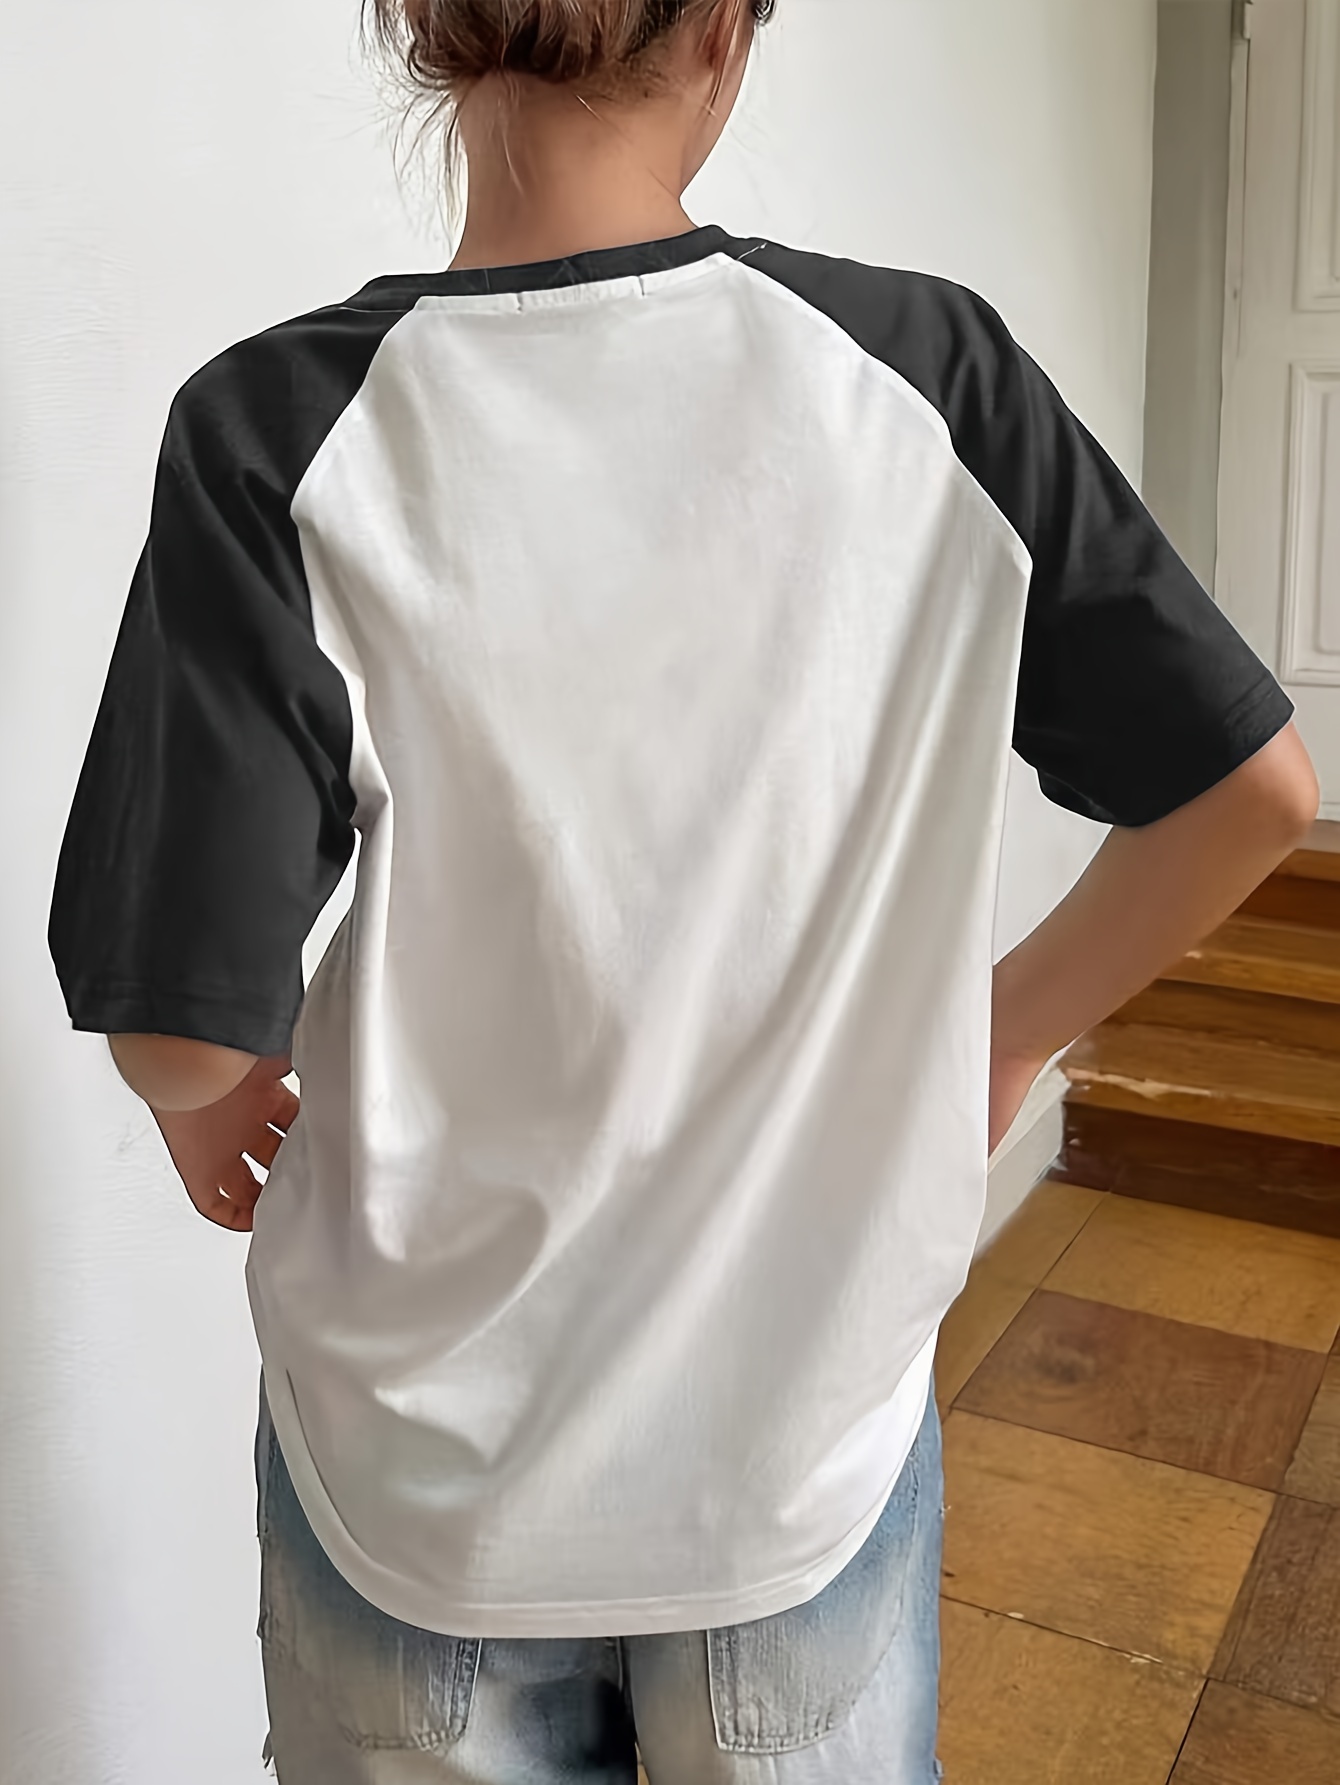 Wunderlove by Westside Taupe Printed Raglan-Sleeved T-Shirt Price